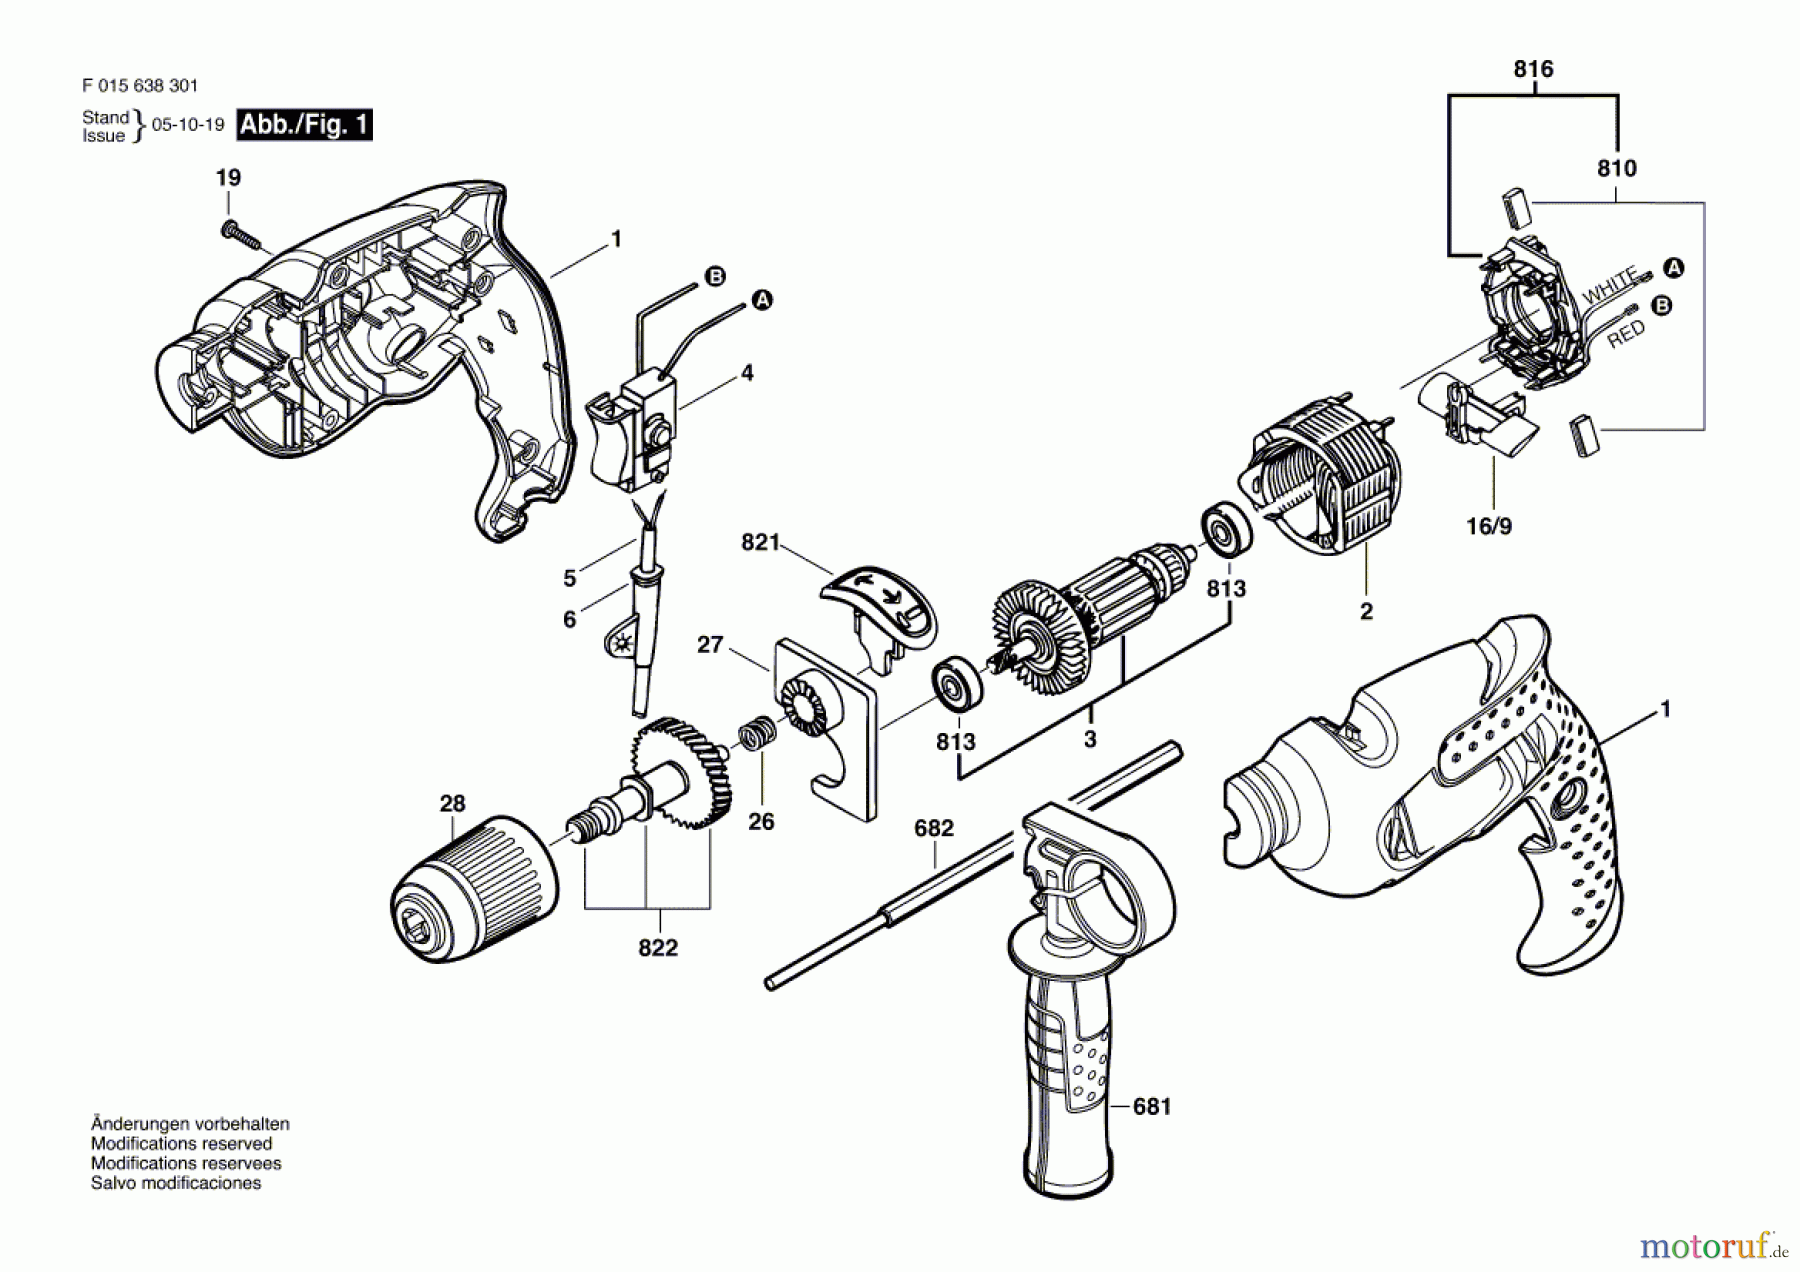  Bosch Werkzeug Schlagbohrmaschine 6382 Seite 1